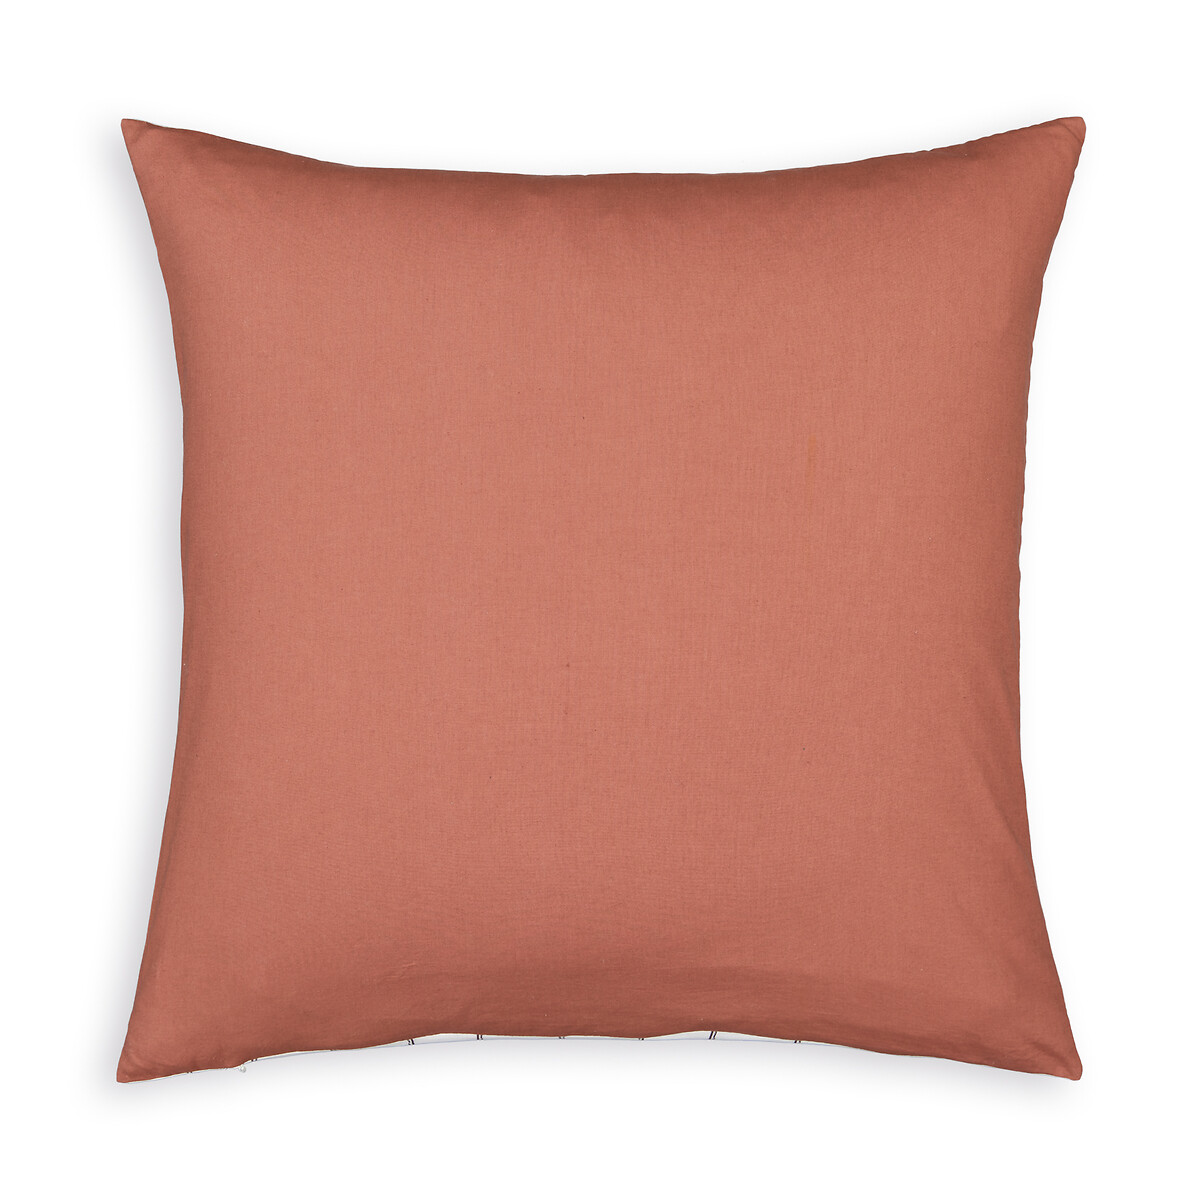 Чехол На подушку из осветленного хлопка Armino 65 x 65 см красный LaRedoute, размер 65 x 65 см - фото 2